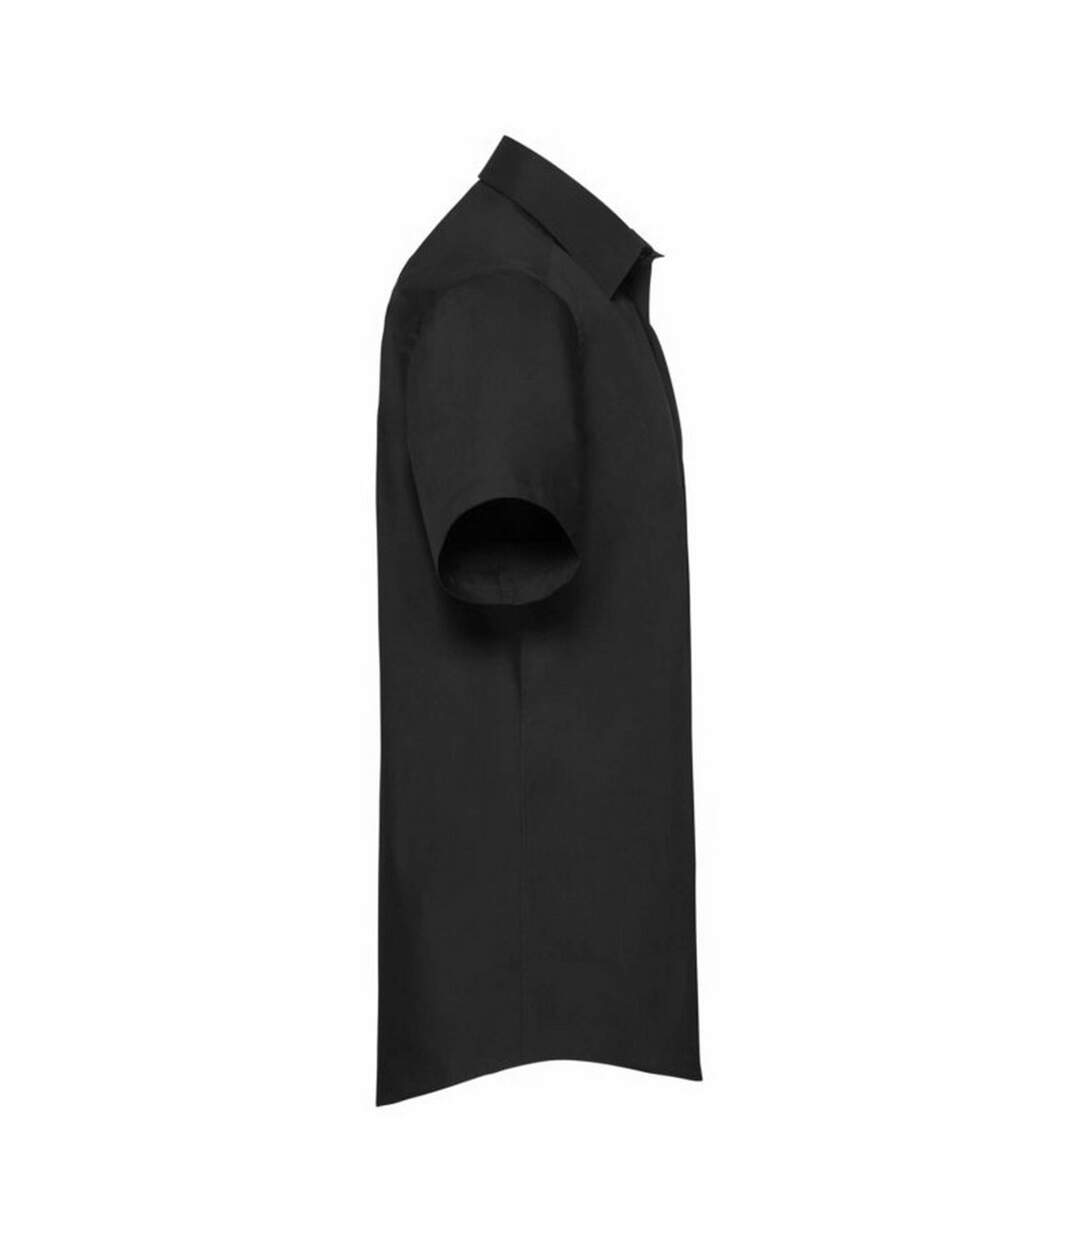 Chemise à manches courtes Russell Collection pour homme (Noir) - UTBC1020